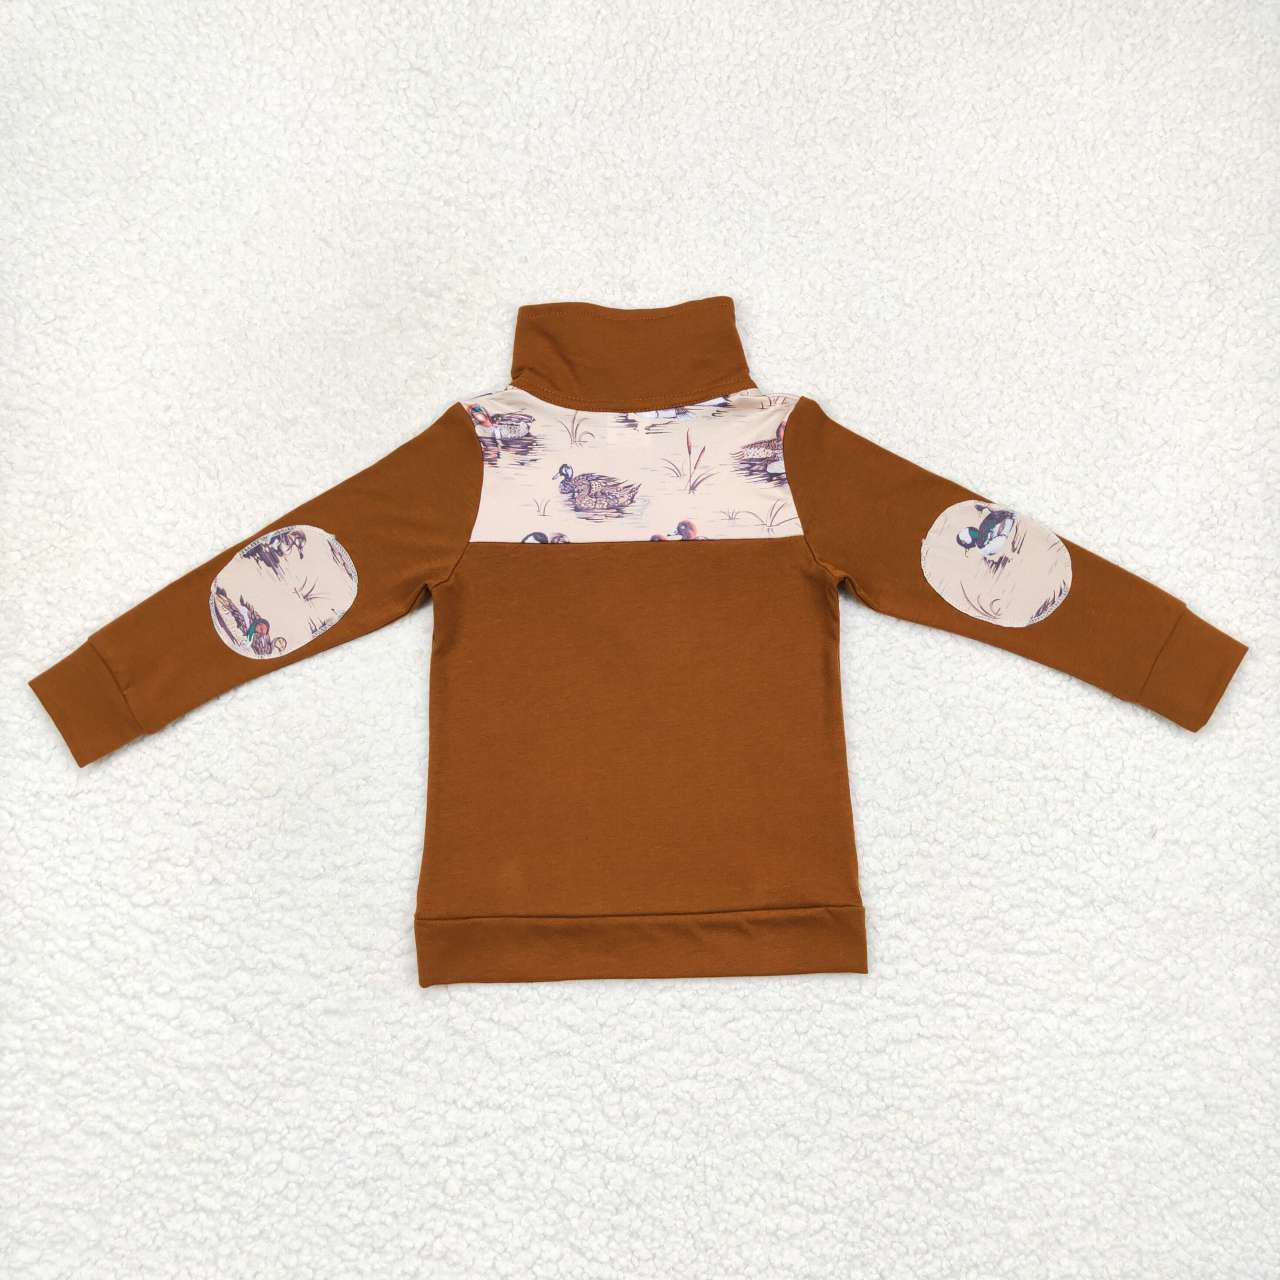 BT0343  Brown duck print boys pullover zipper tee shirt top